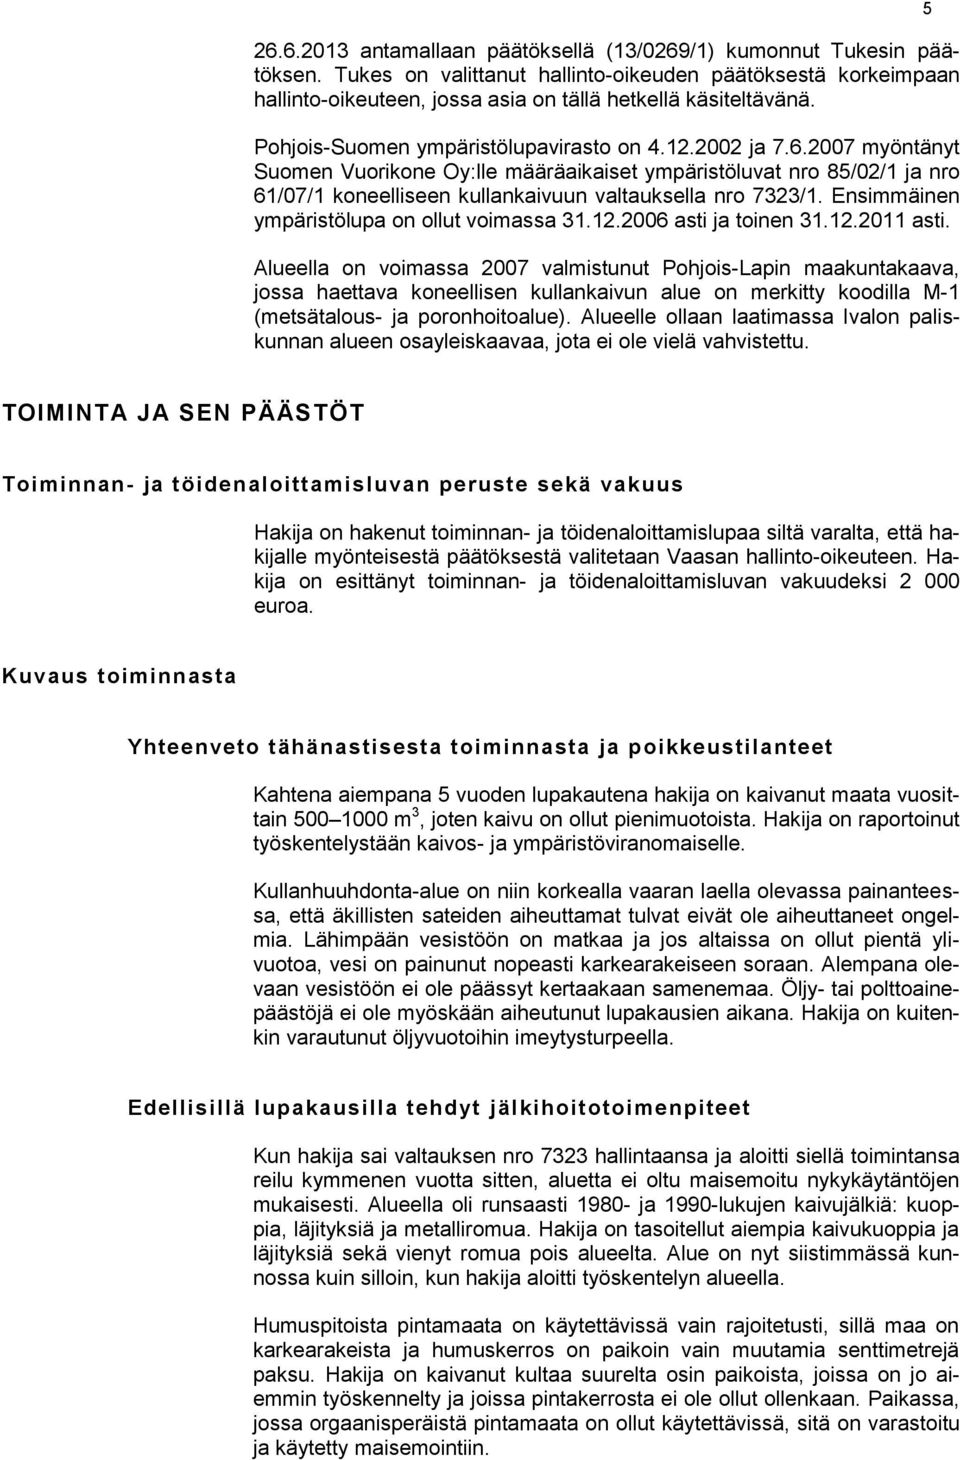 2007 myöntänyt Suomen Vuorikone Oy:lle määräaikaiset ympäristöluvat nro 85/02/1 ja nro 61/07/1 koneelliseen kullankaivuun valtauksella nro 7323/1. Ensimmäinen ympäristölupa on ollut voimassa 31.12.